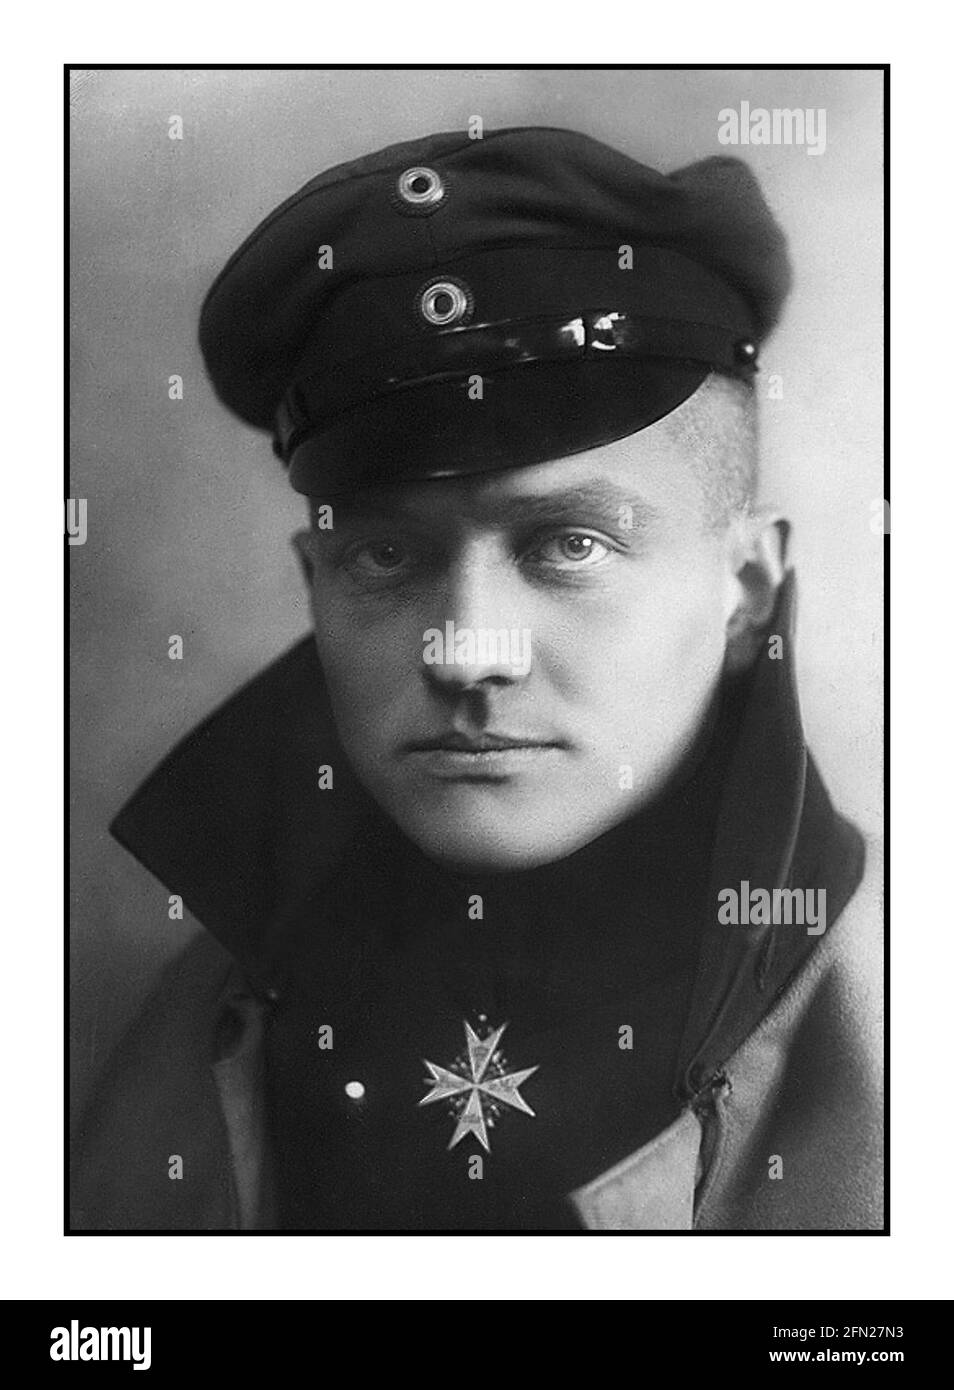 RED BARON Portrait WW1 c1917 von Manfred Albrecht Freiherr von Richthofen, auf Englisch bekannt als Baron von Richthofen, Und vor allem als der "Rote Baron" bekannt, war während des Ersten Weltkriegs ein Kampfpilot bei der deutschen Luftwaffe. Er gilt als Ass des Krieges und wird offiziell mit 80 Luftkampfsiegen angerechnet. Richthofen trägt den Pour le Mérite, den 'Blauen Max', Preußens höchsten Militärbefehl, in diesem offiziellen Porträt, c.. 1917. Stockfoto